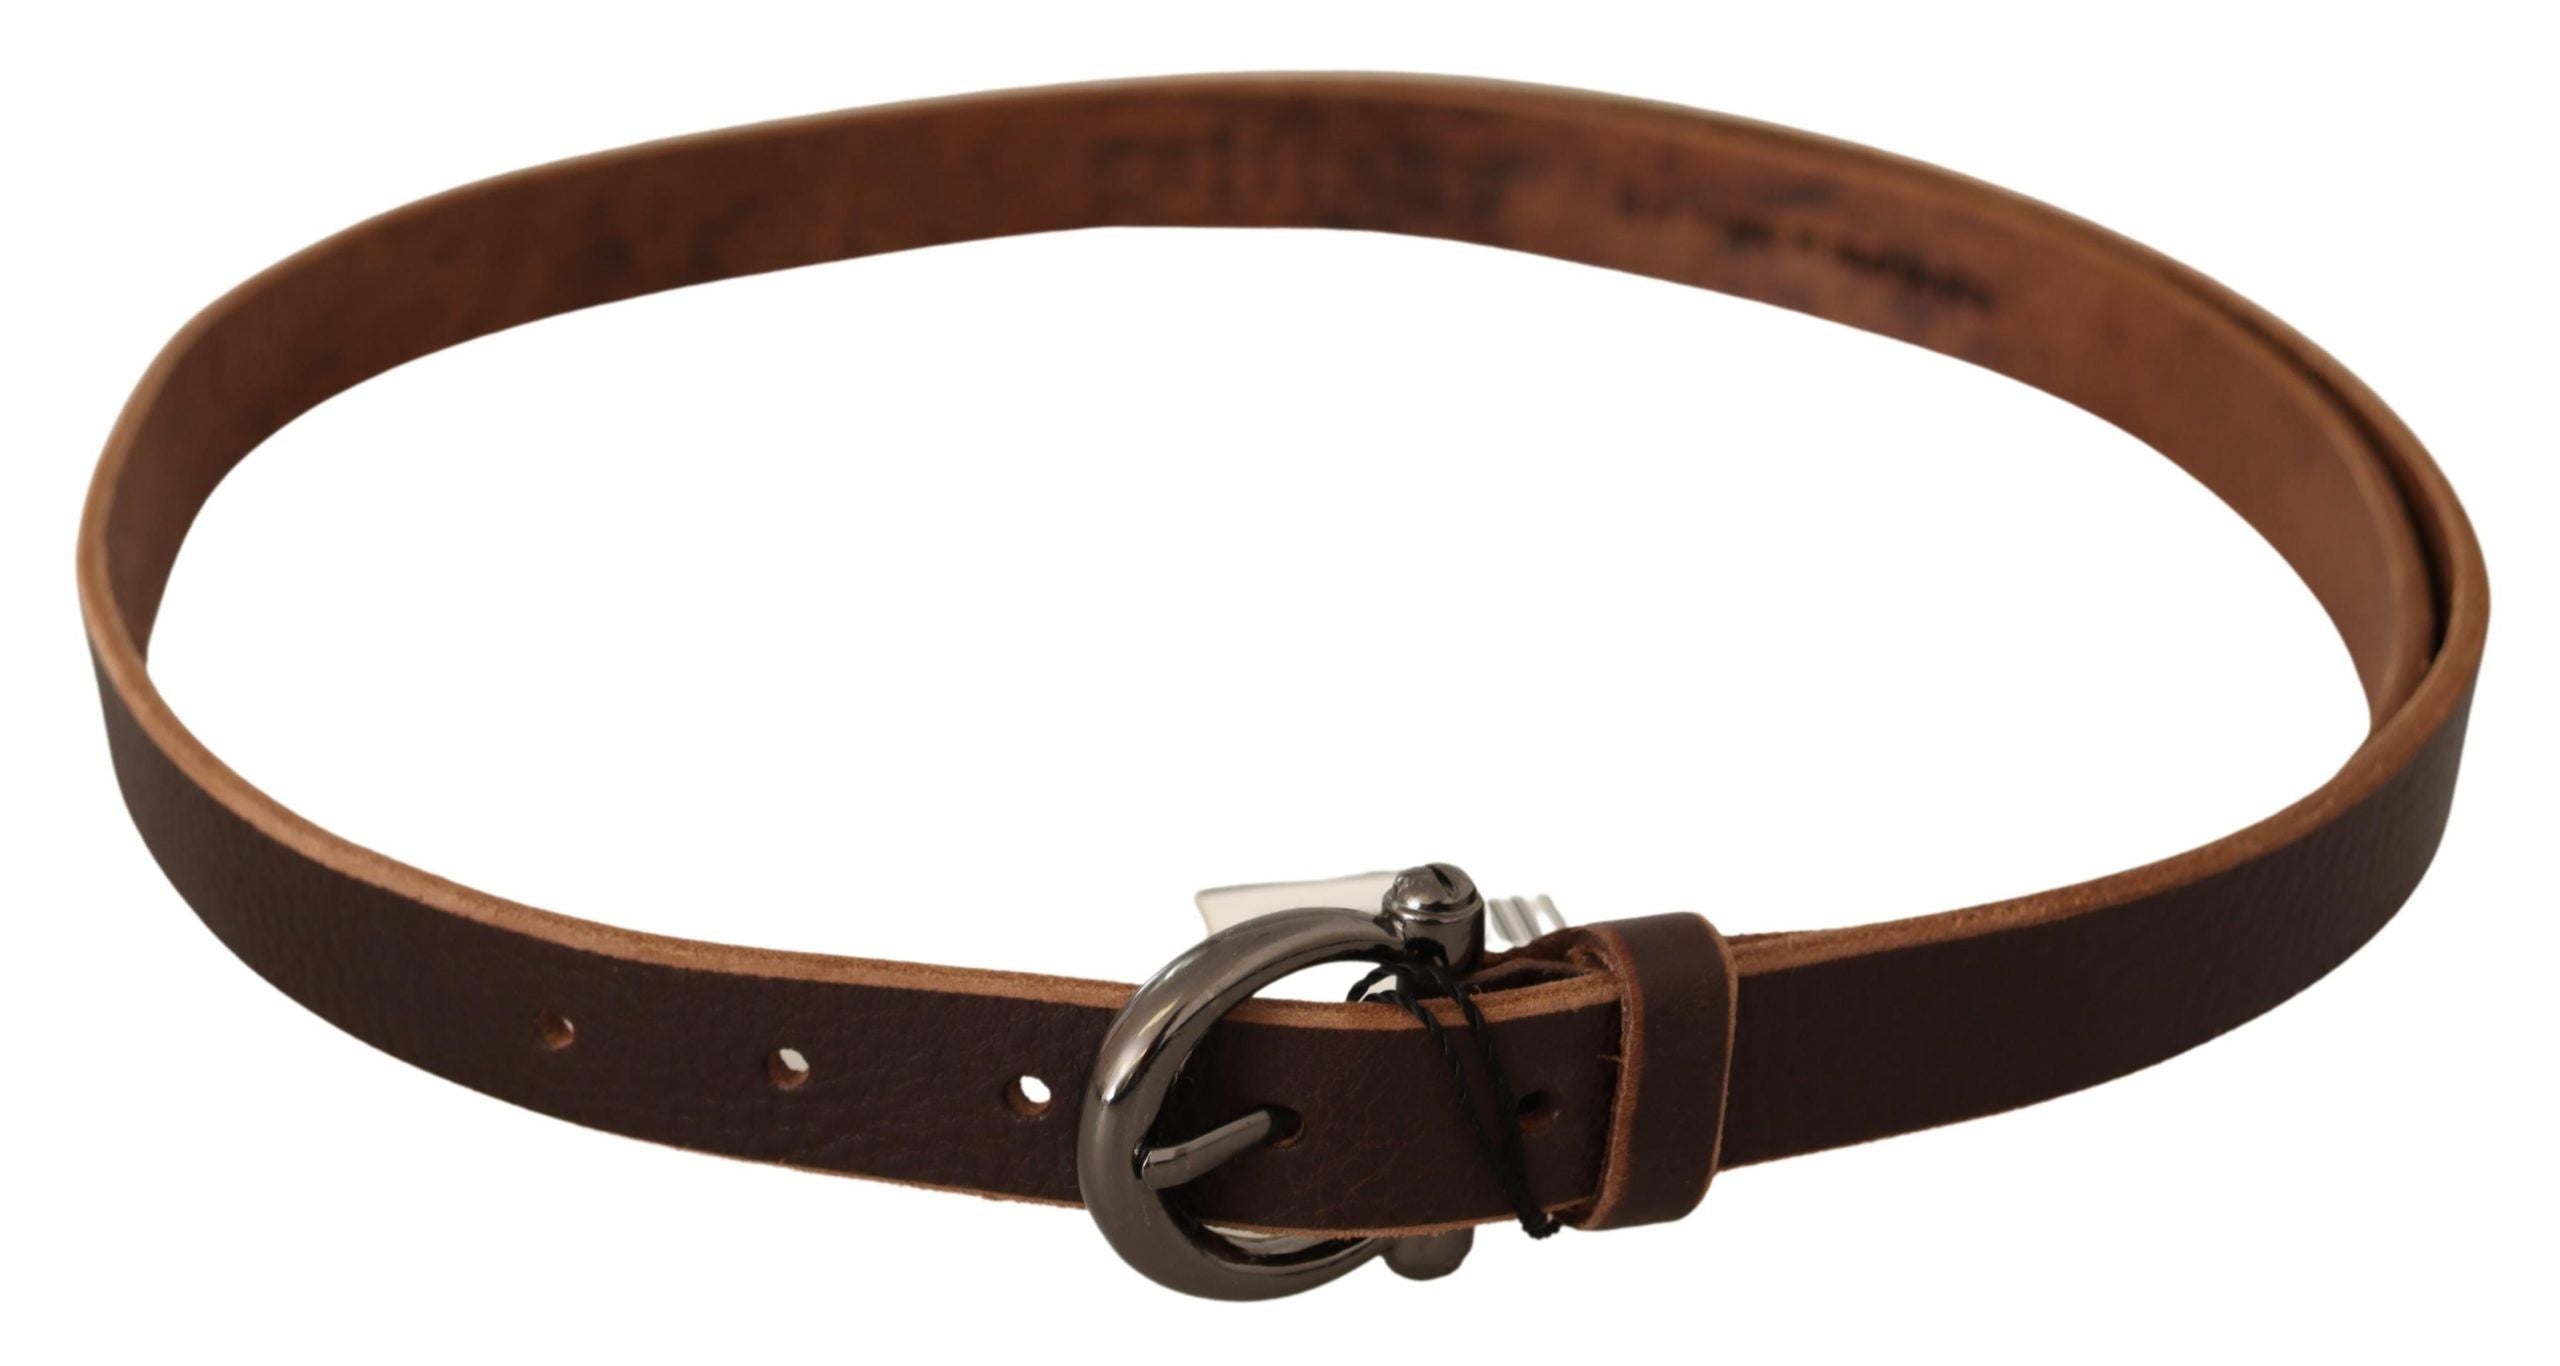 John Galliano Brown Leather Logo Design Round Buckle Waist Belt